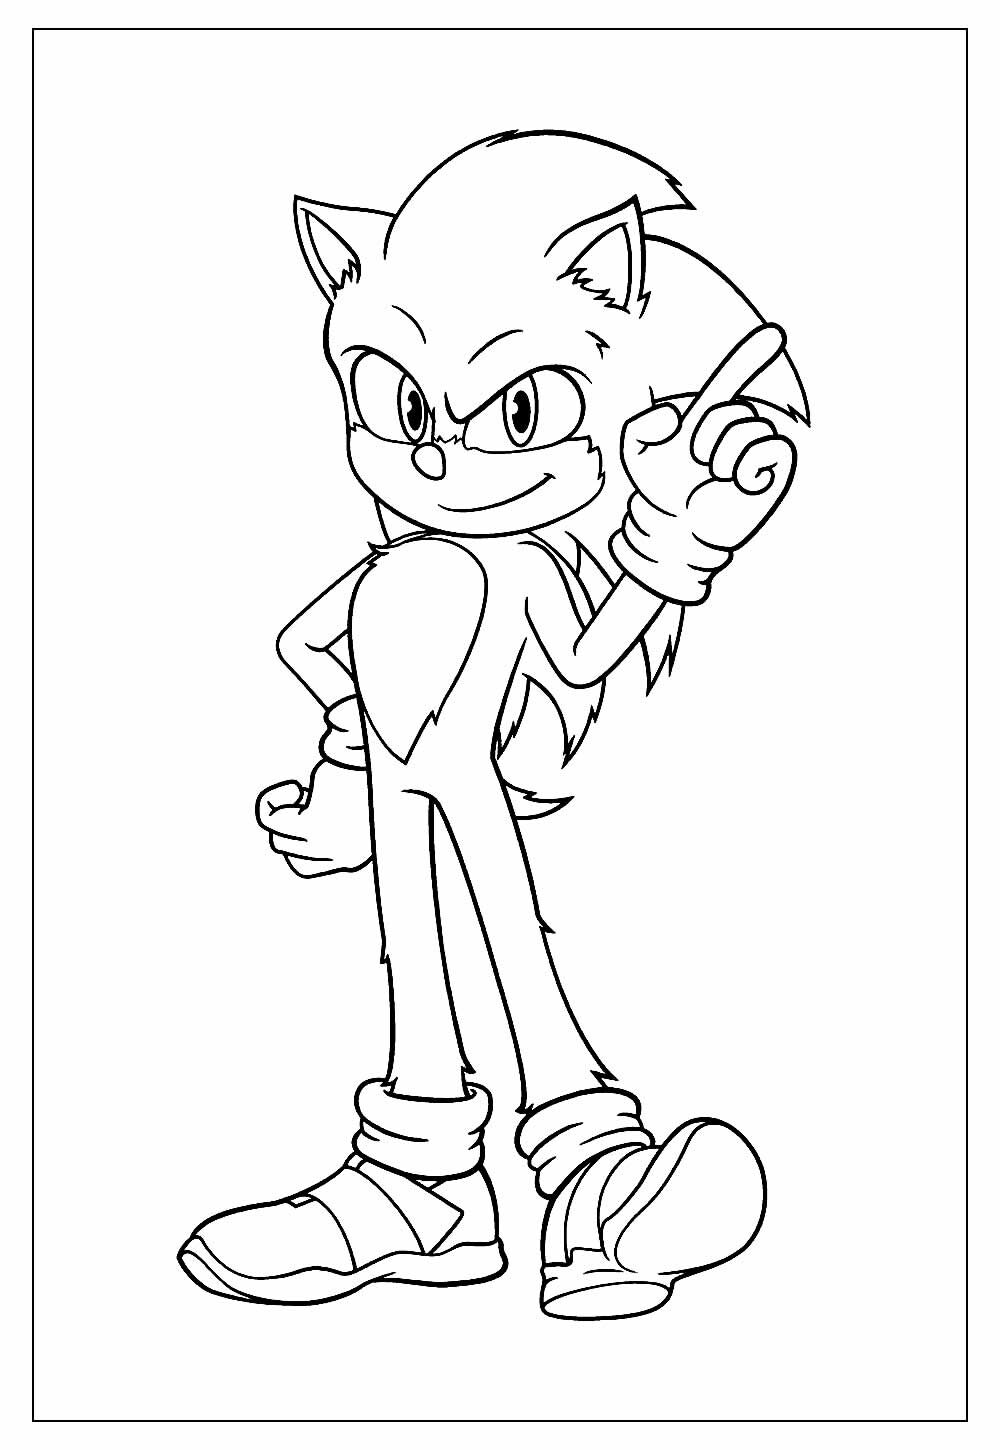 Desenhos do Sonic - Modelos para Colorir